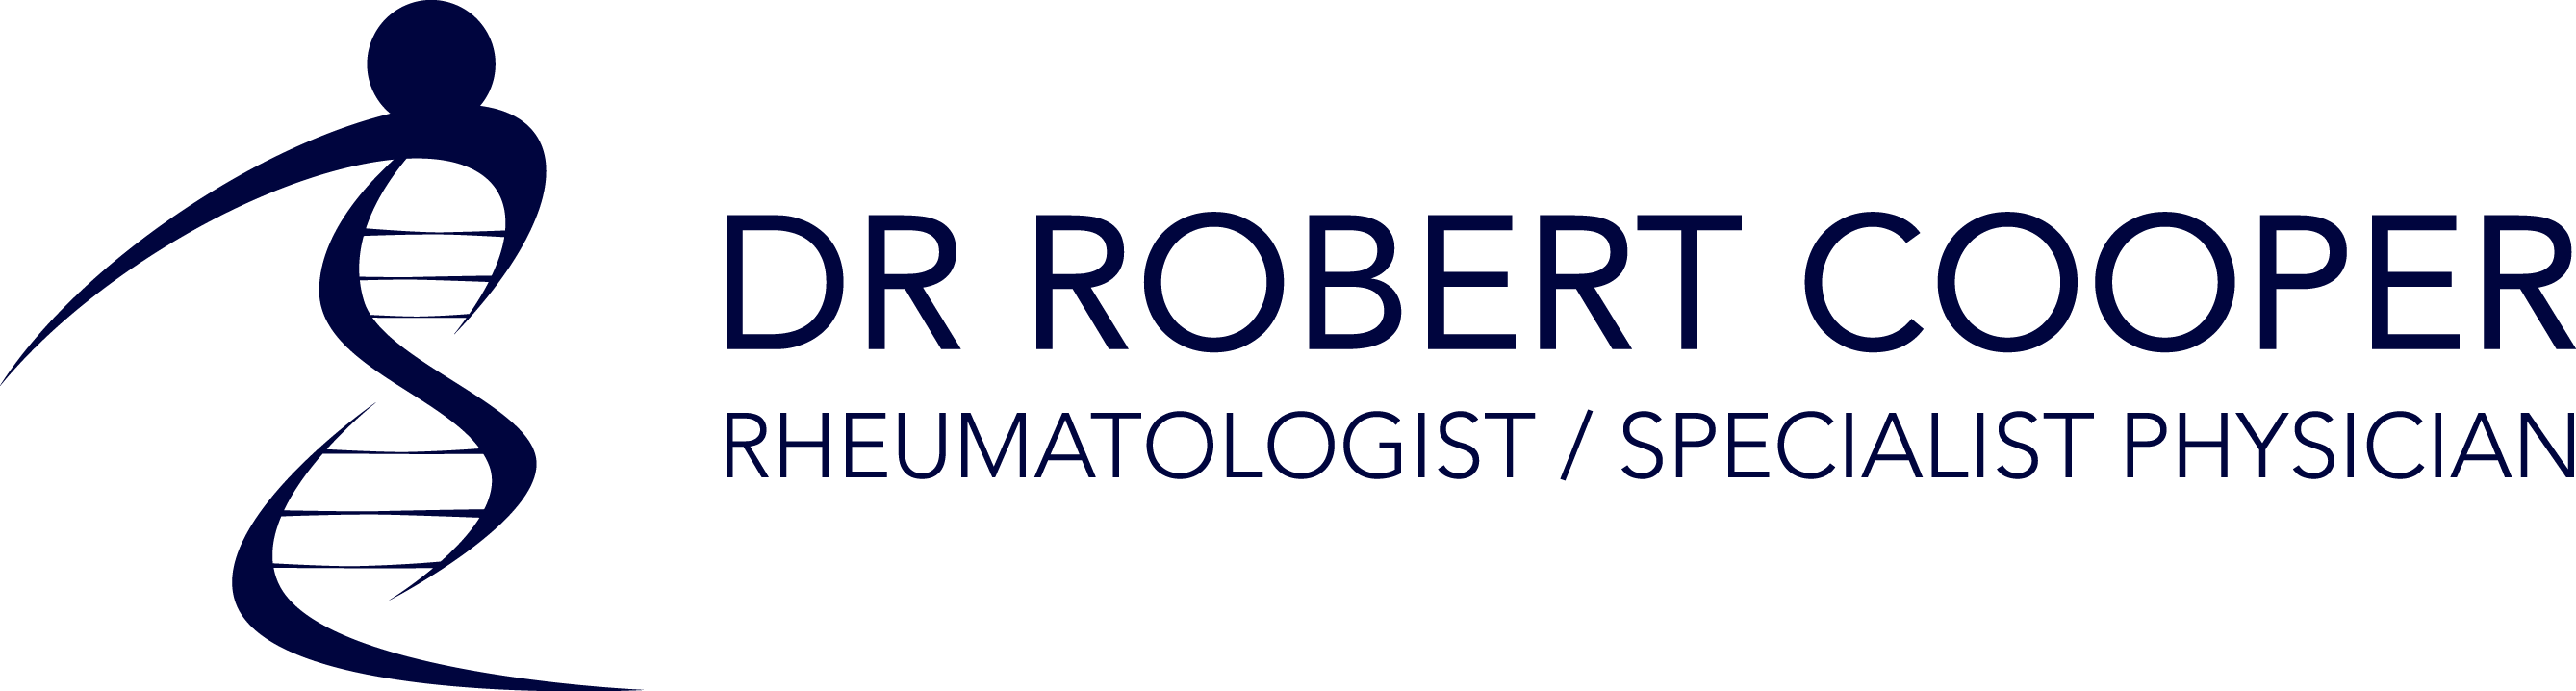 Dr Robert Cooper Rheumatologist Cape Town